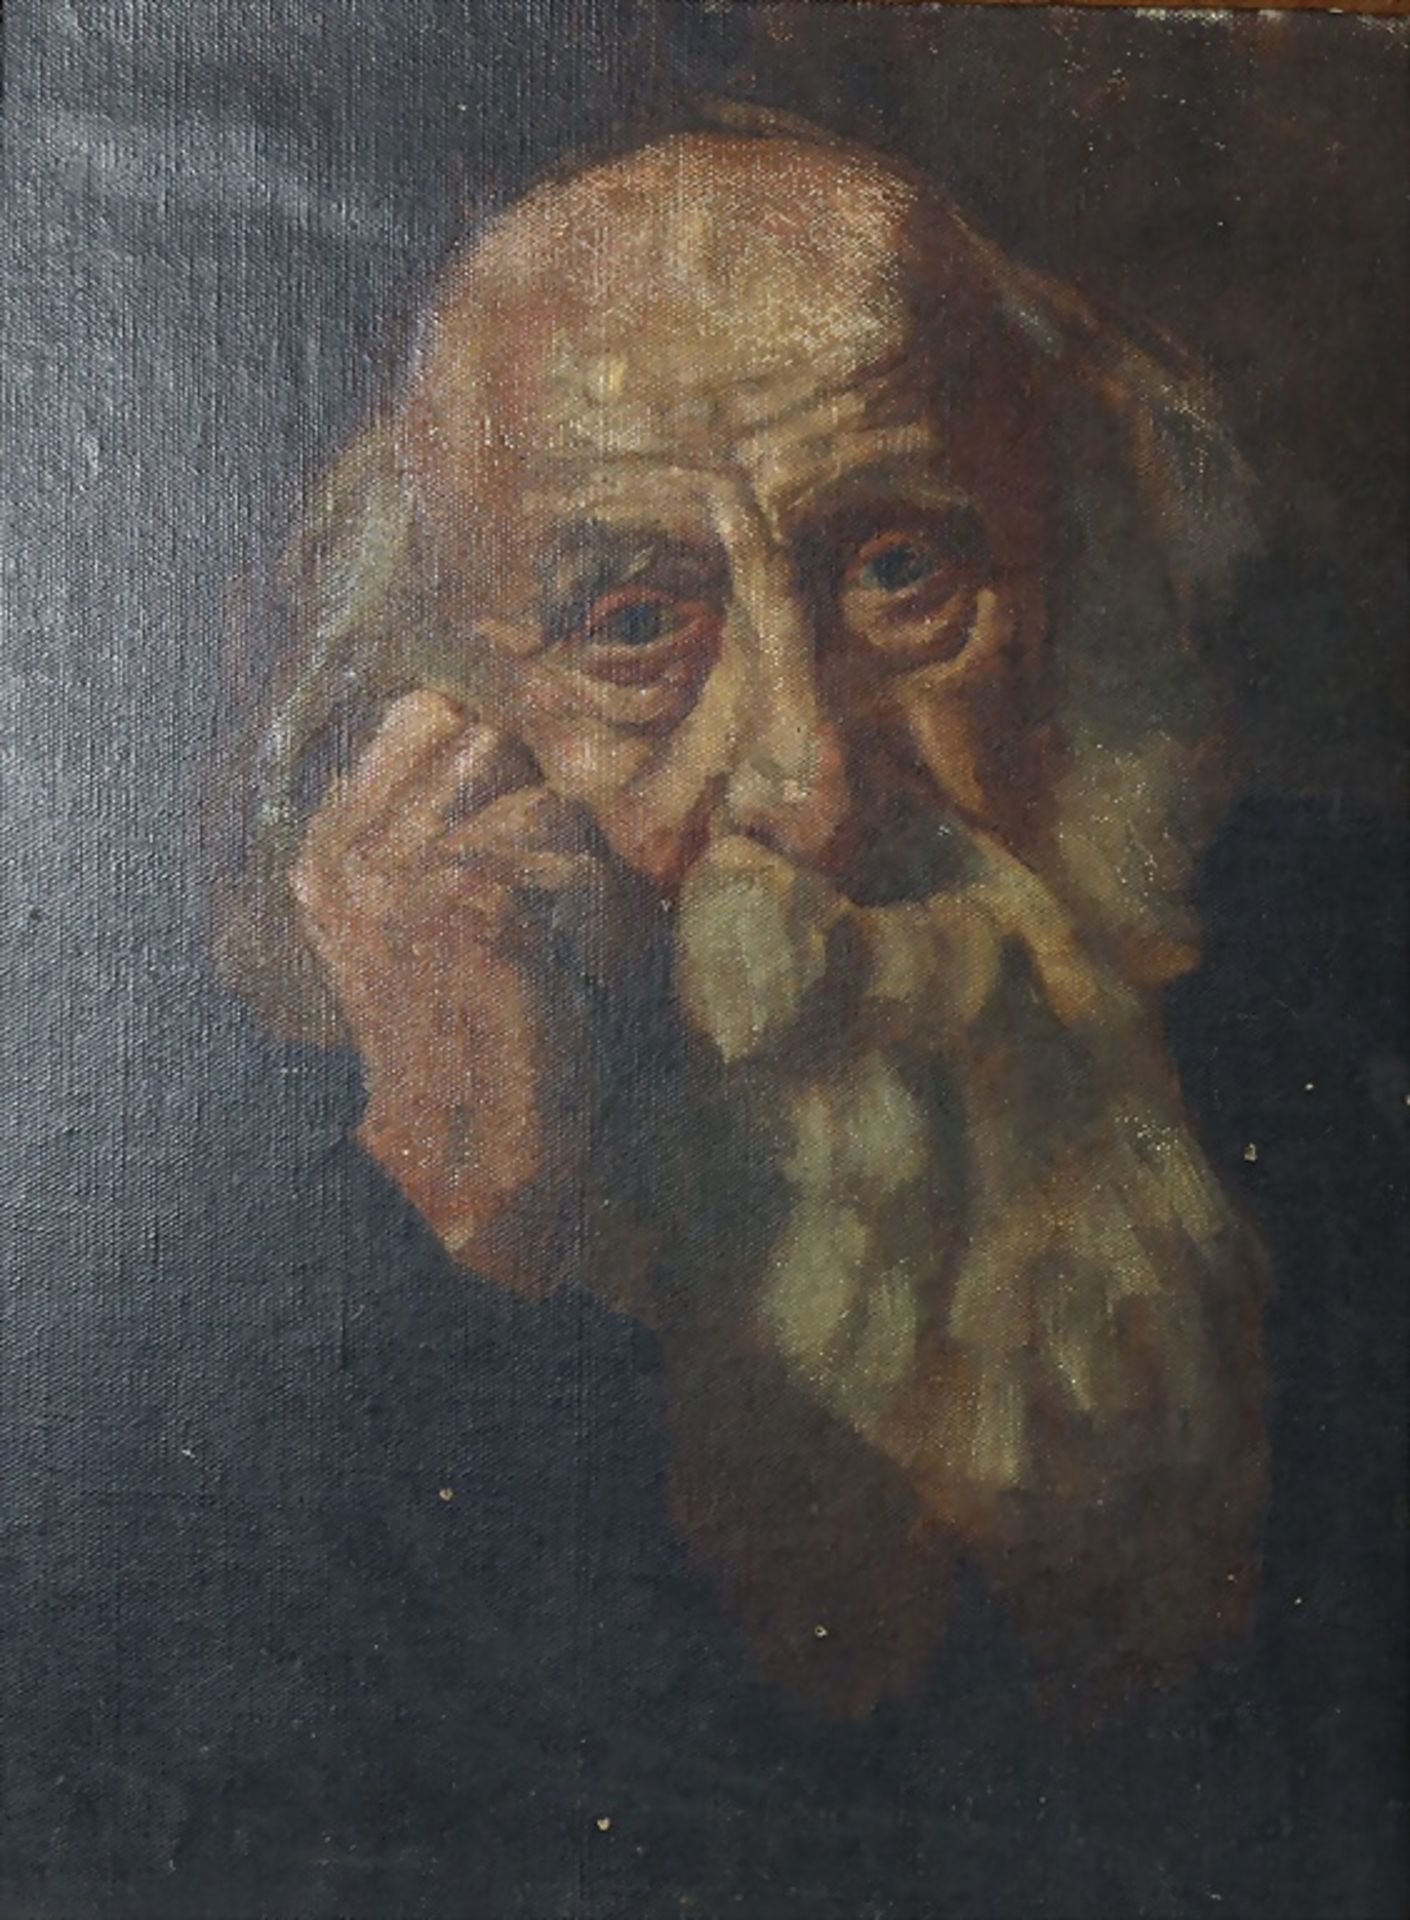 Künstler des 18. Jh., 'Bärtiger Gelehrter (Rabbiner)' / 'Bearded Scholar', Ende 18. Jh.